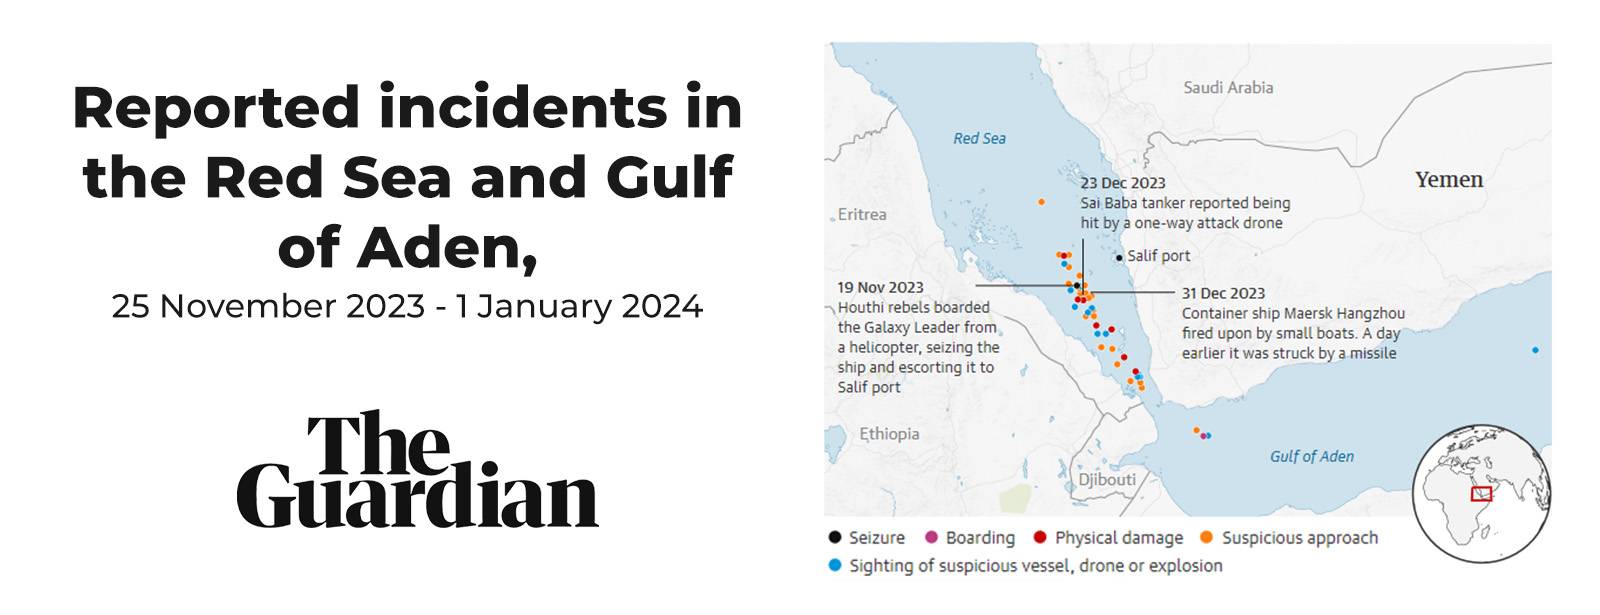 بحیرہ احمر اور خلیج عدن میں رپورٹ شدہ واقعات